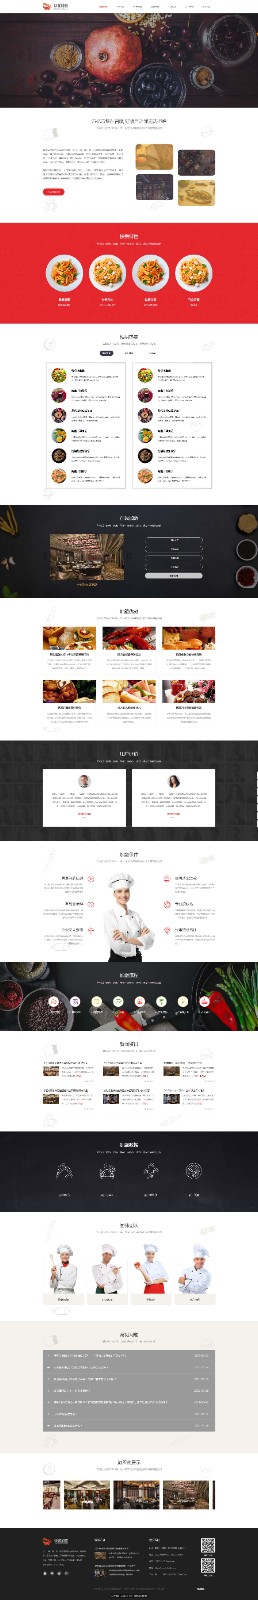 企业网站精美模板-restaurant-449